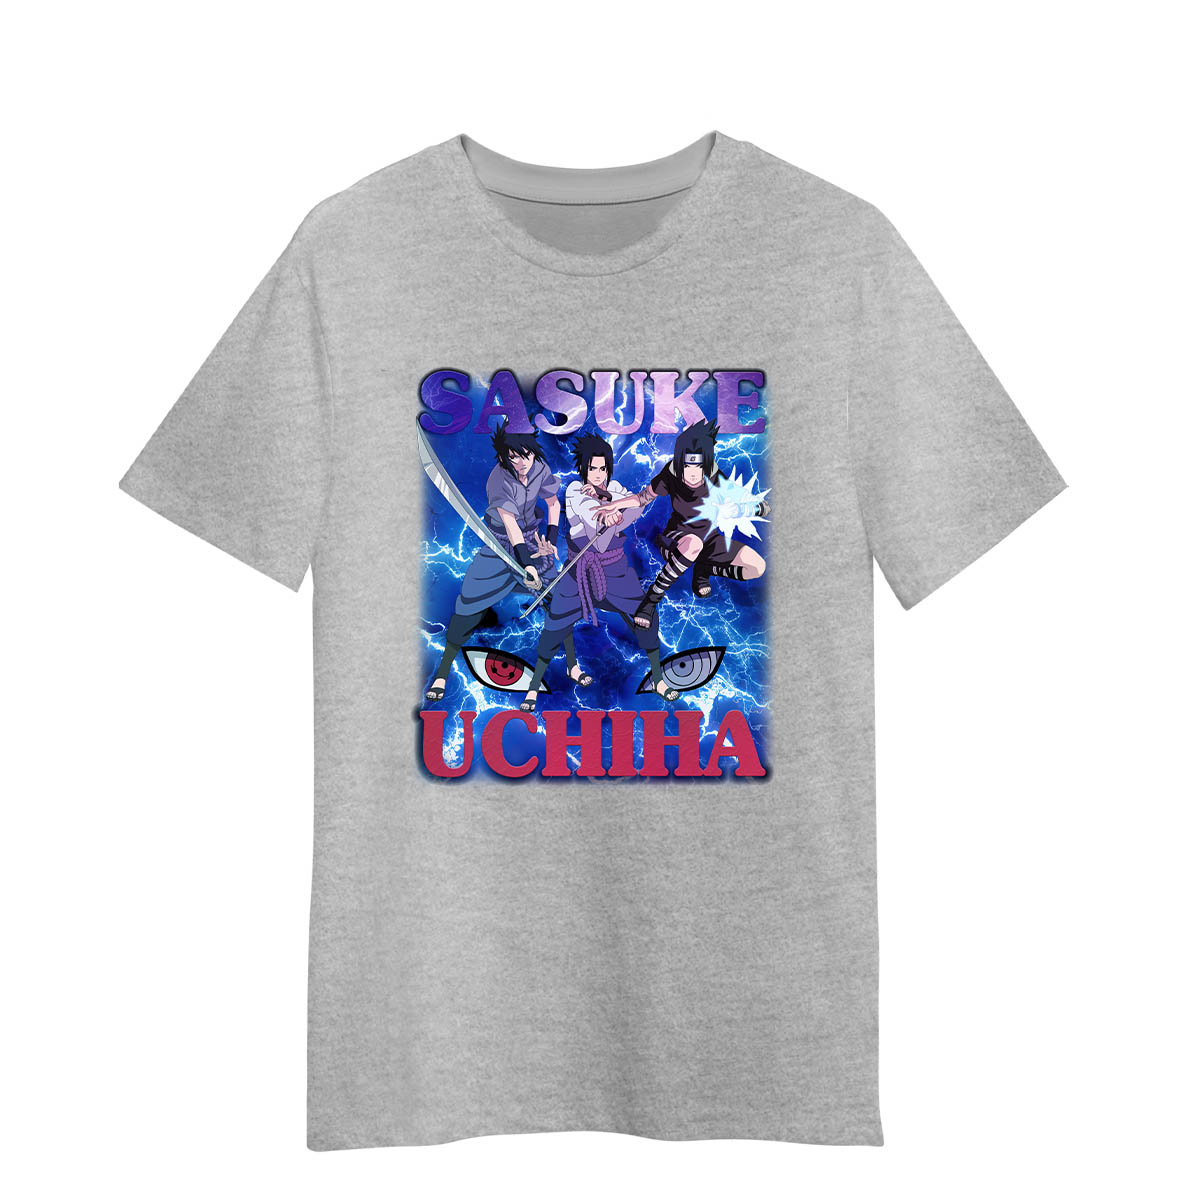 Sasuke Uchiha Naruto Anime Shippuden Adult Unisex Gray T-shirt